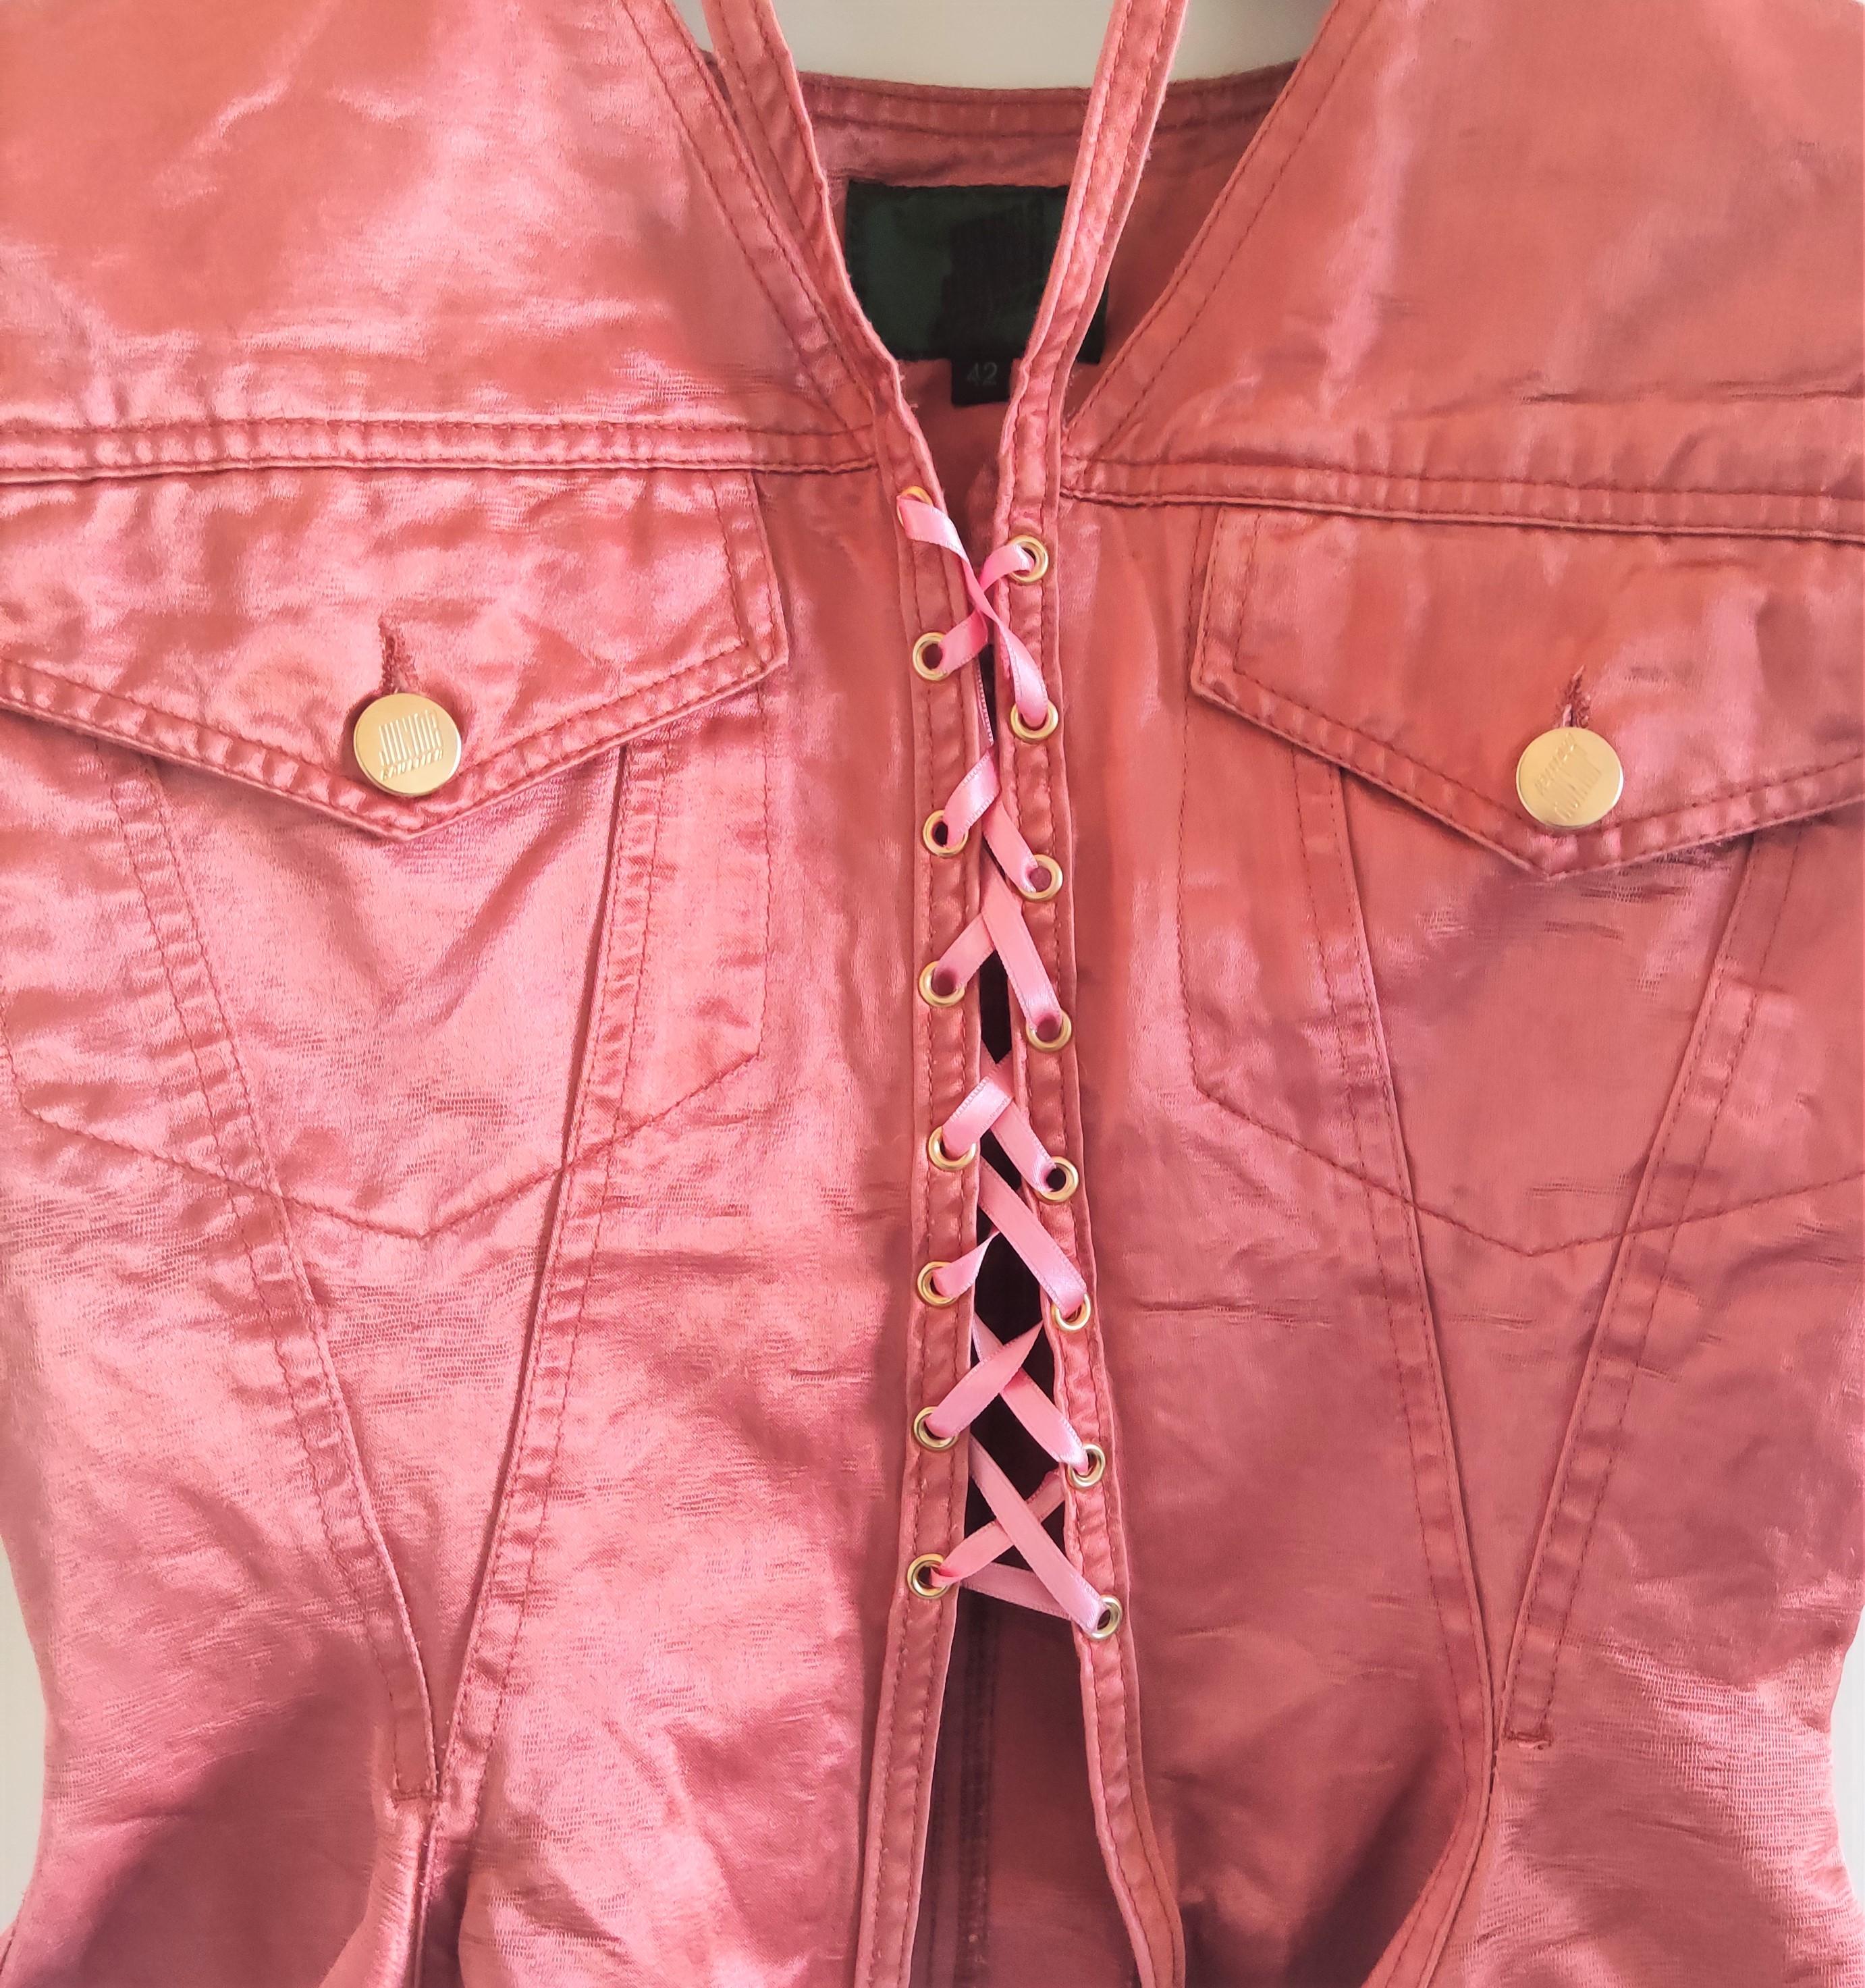 Jean Paul Gaultier Corset Bustier Pink Rose Vintage Lace Bondage Dress For Sale 4